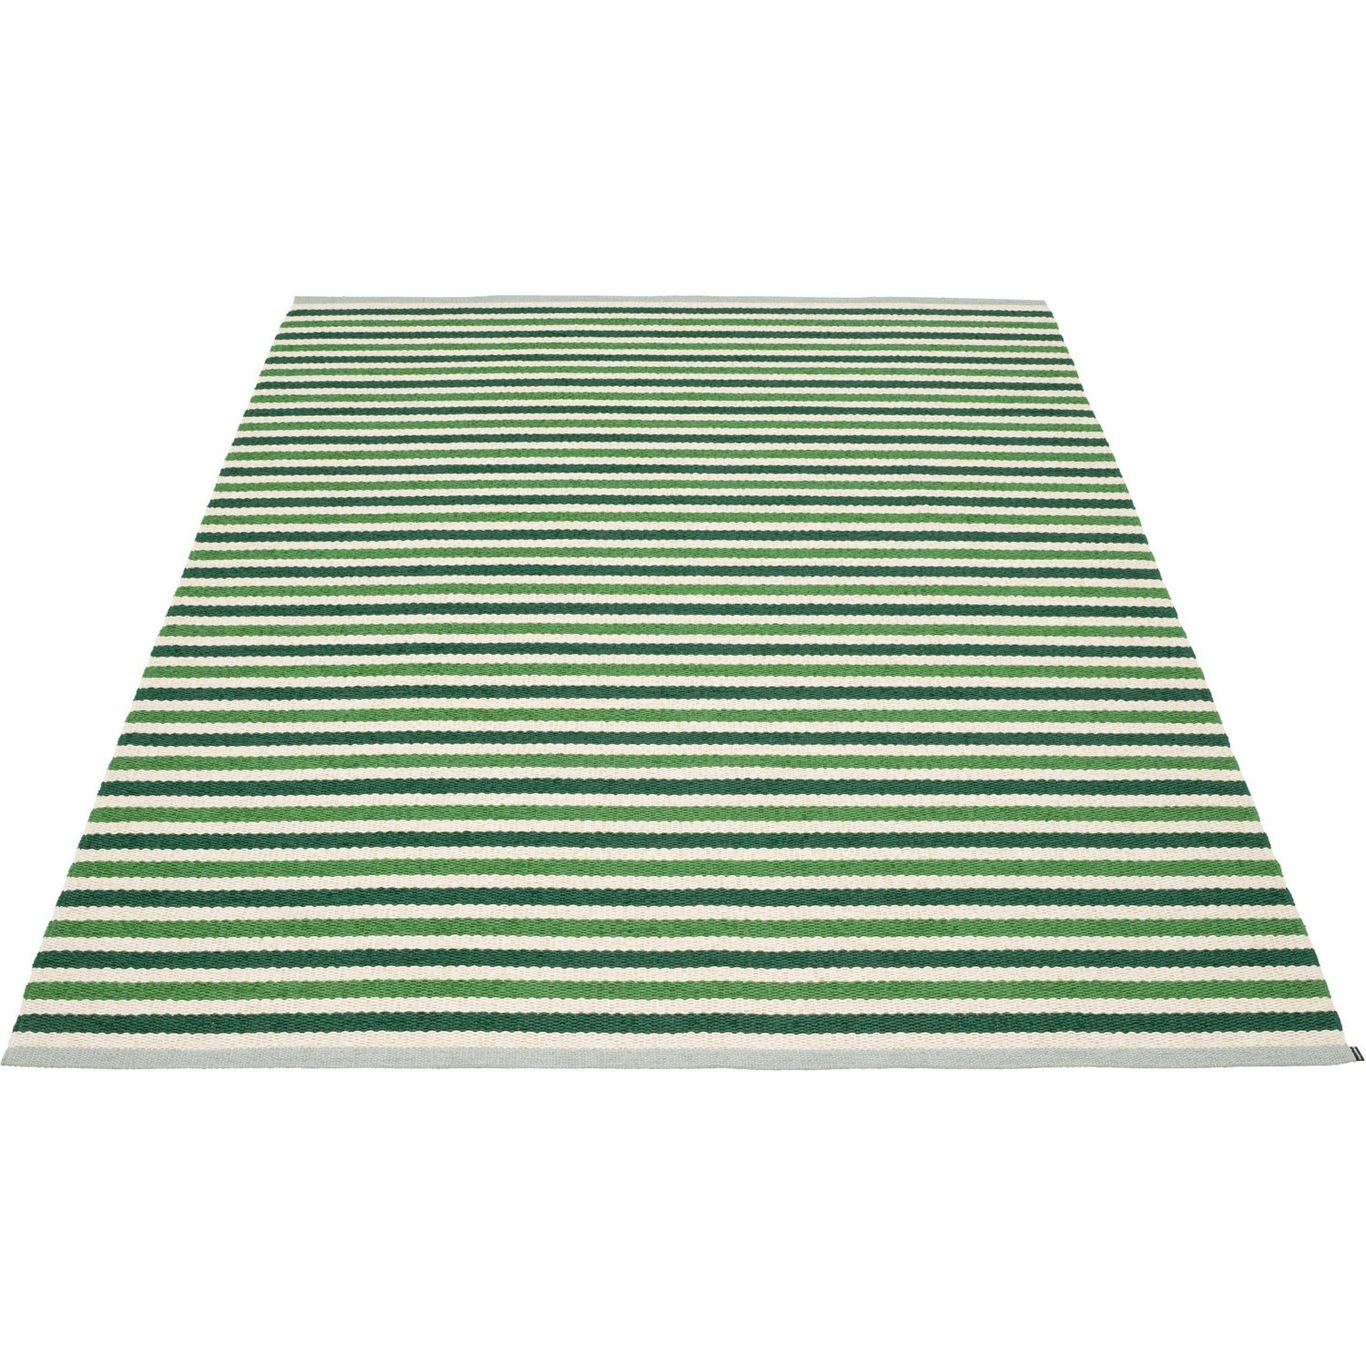 Teo Matta Mörkgrön / Grass Green / Vanilj, 180x260 cm